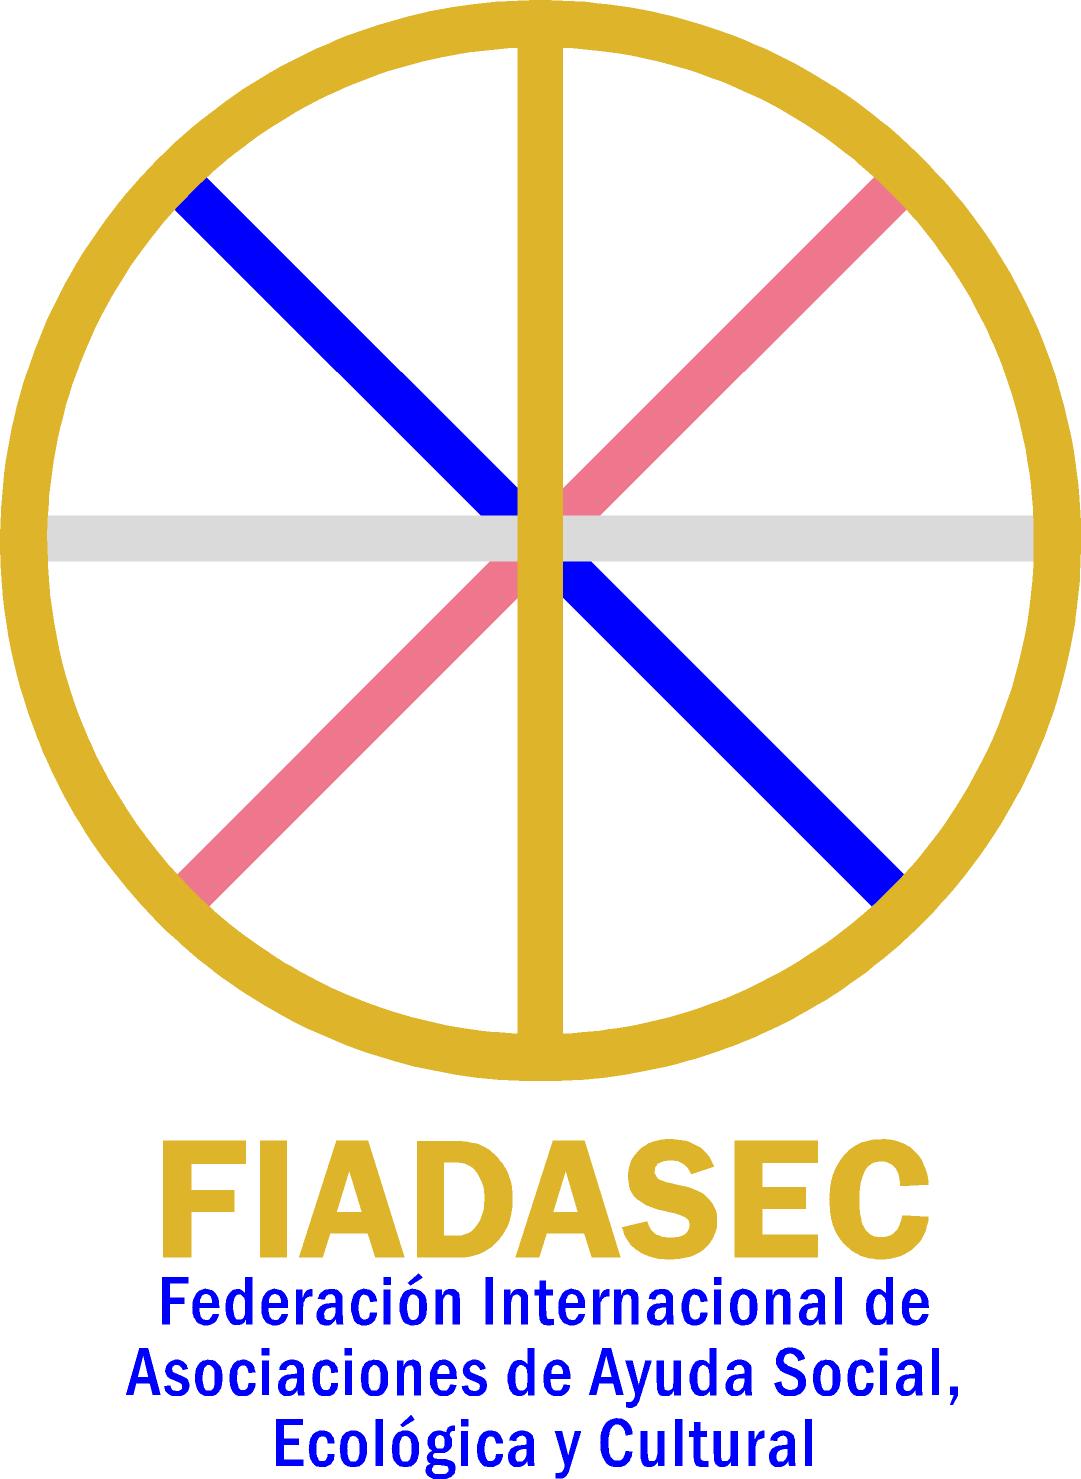 logo for Federación Internacional de Asociaciones de Ayuda Social, Ecológica y Cultural